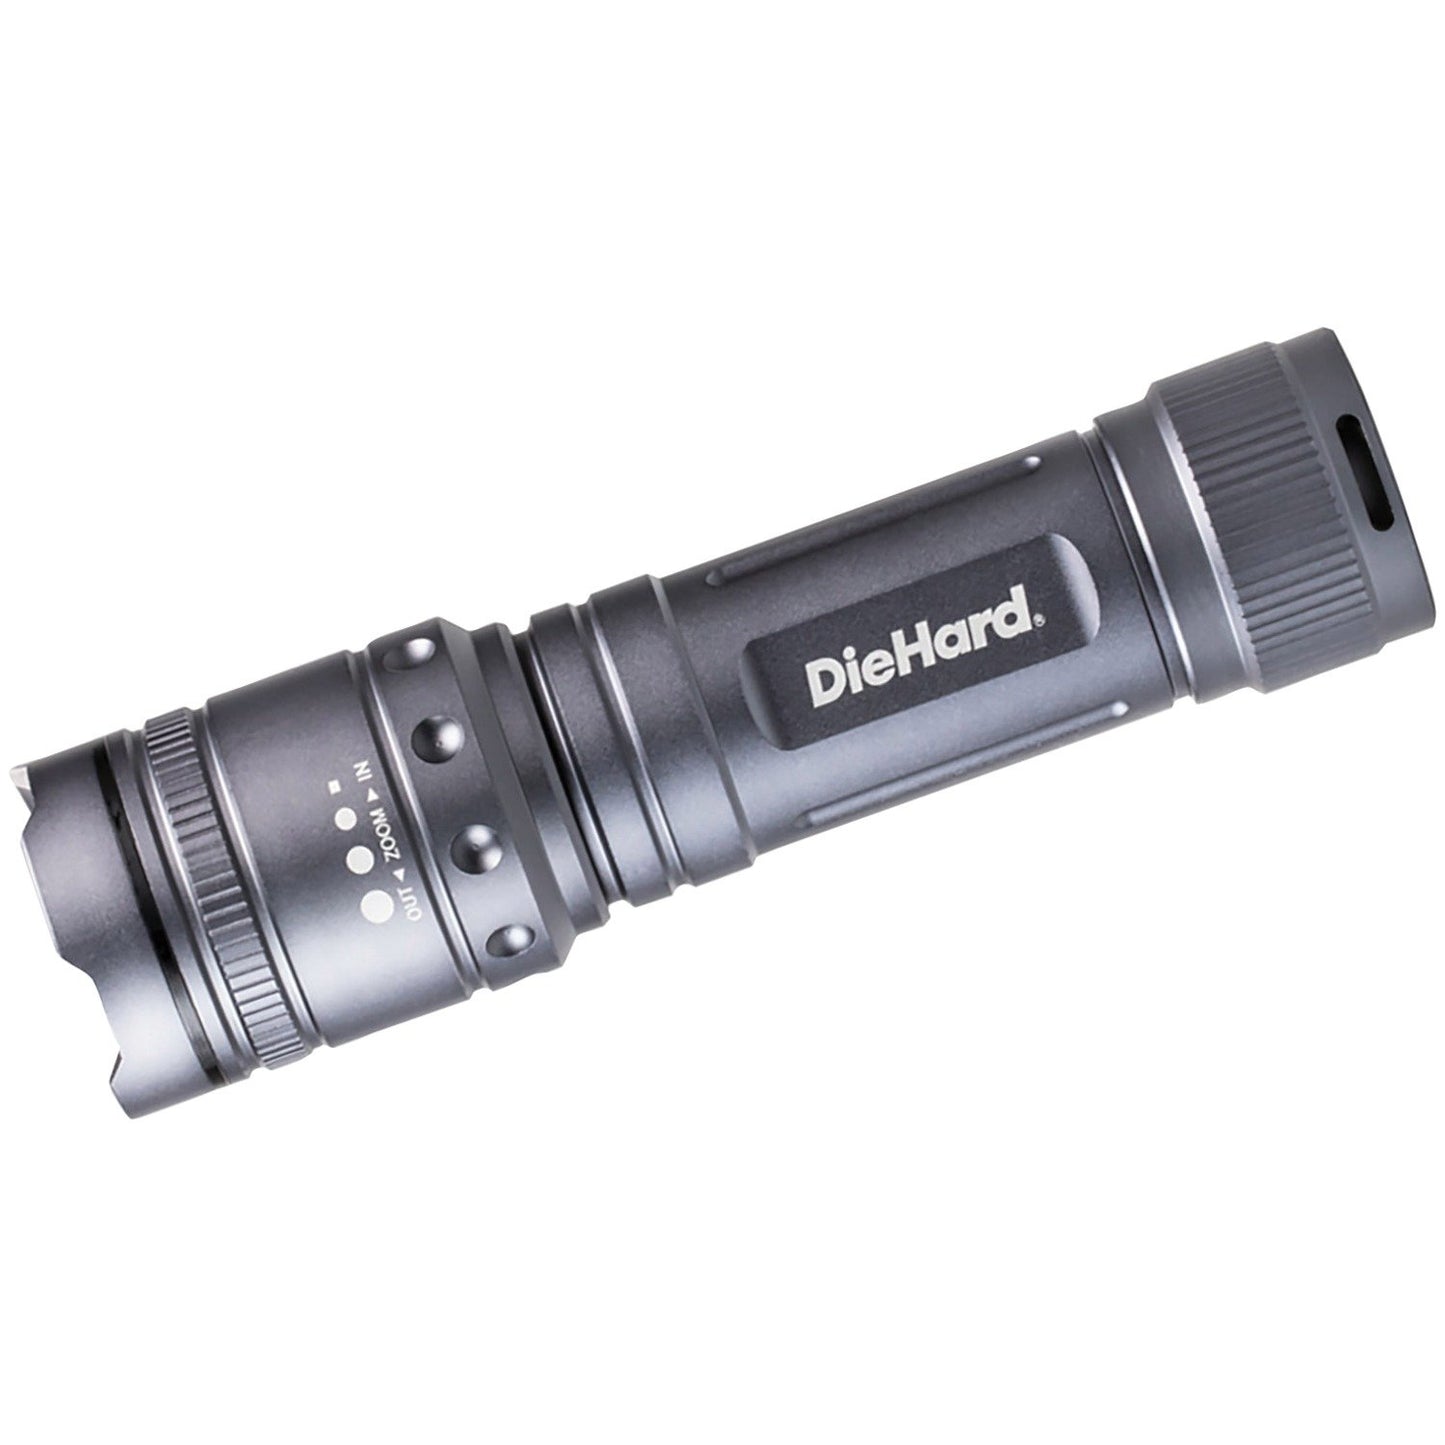 Diehard 41-6123 Twist Focus Flashlight (1,700-Lumen)